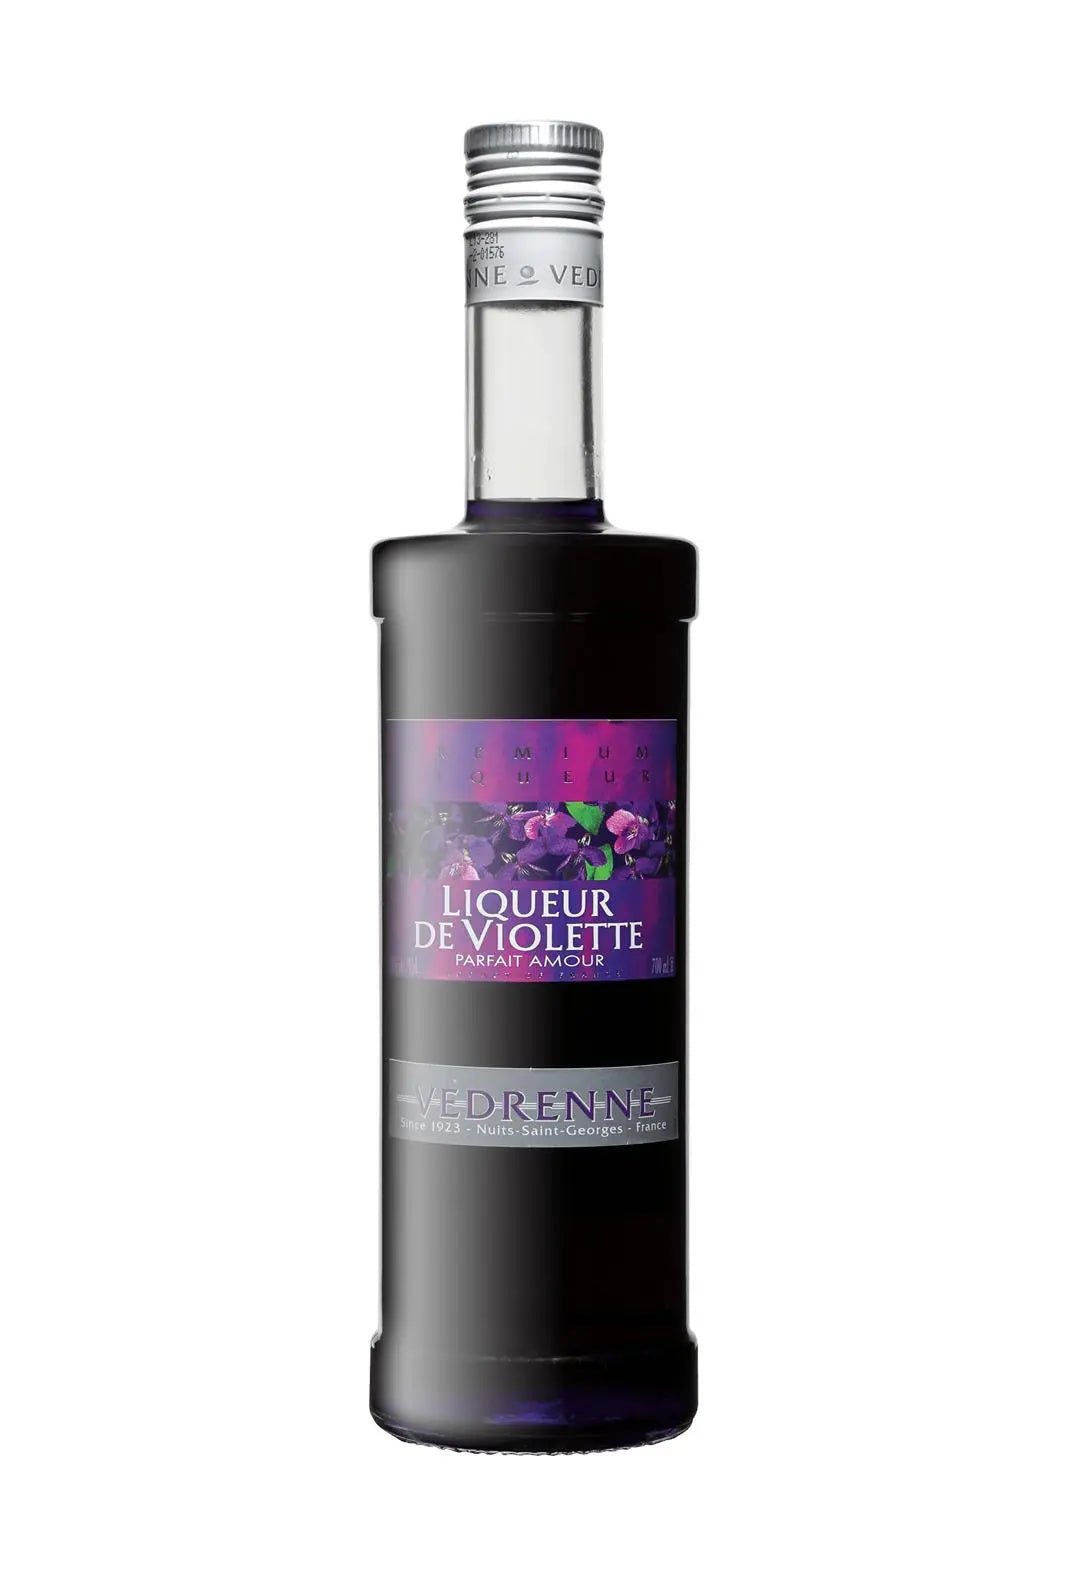 Vedrenne Liqueur de Violette (Violet)18% 700ml - Fruit Liqueur - Liquor Wine Cave